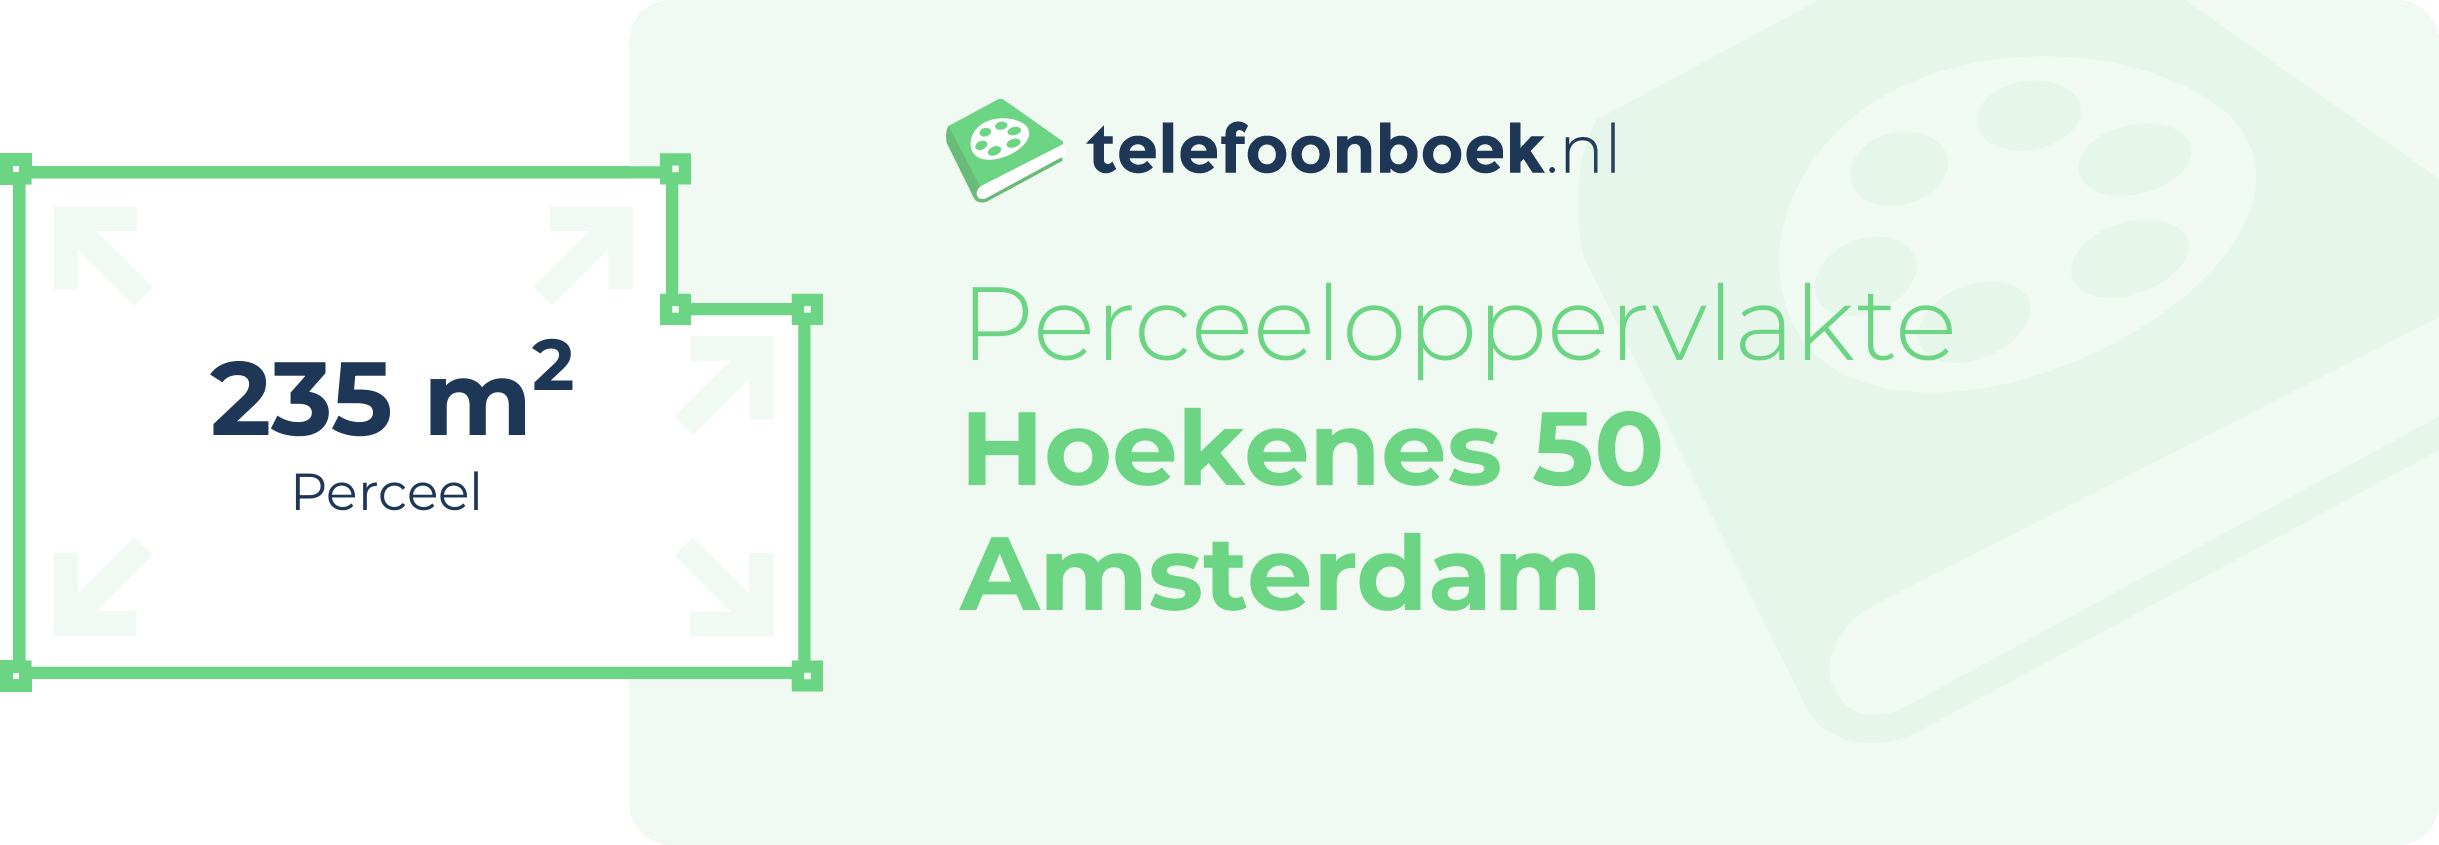 Perceeloppervlakte Hoekenes 50 Amsterdam